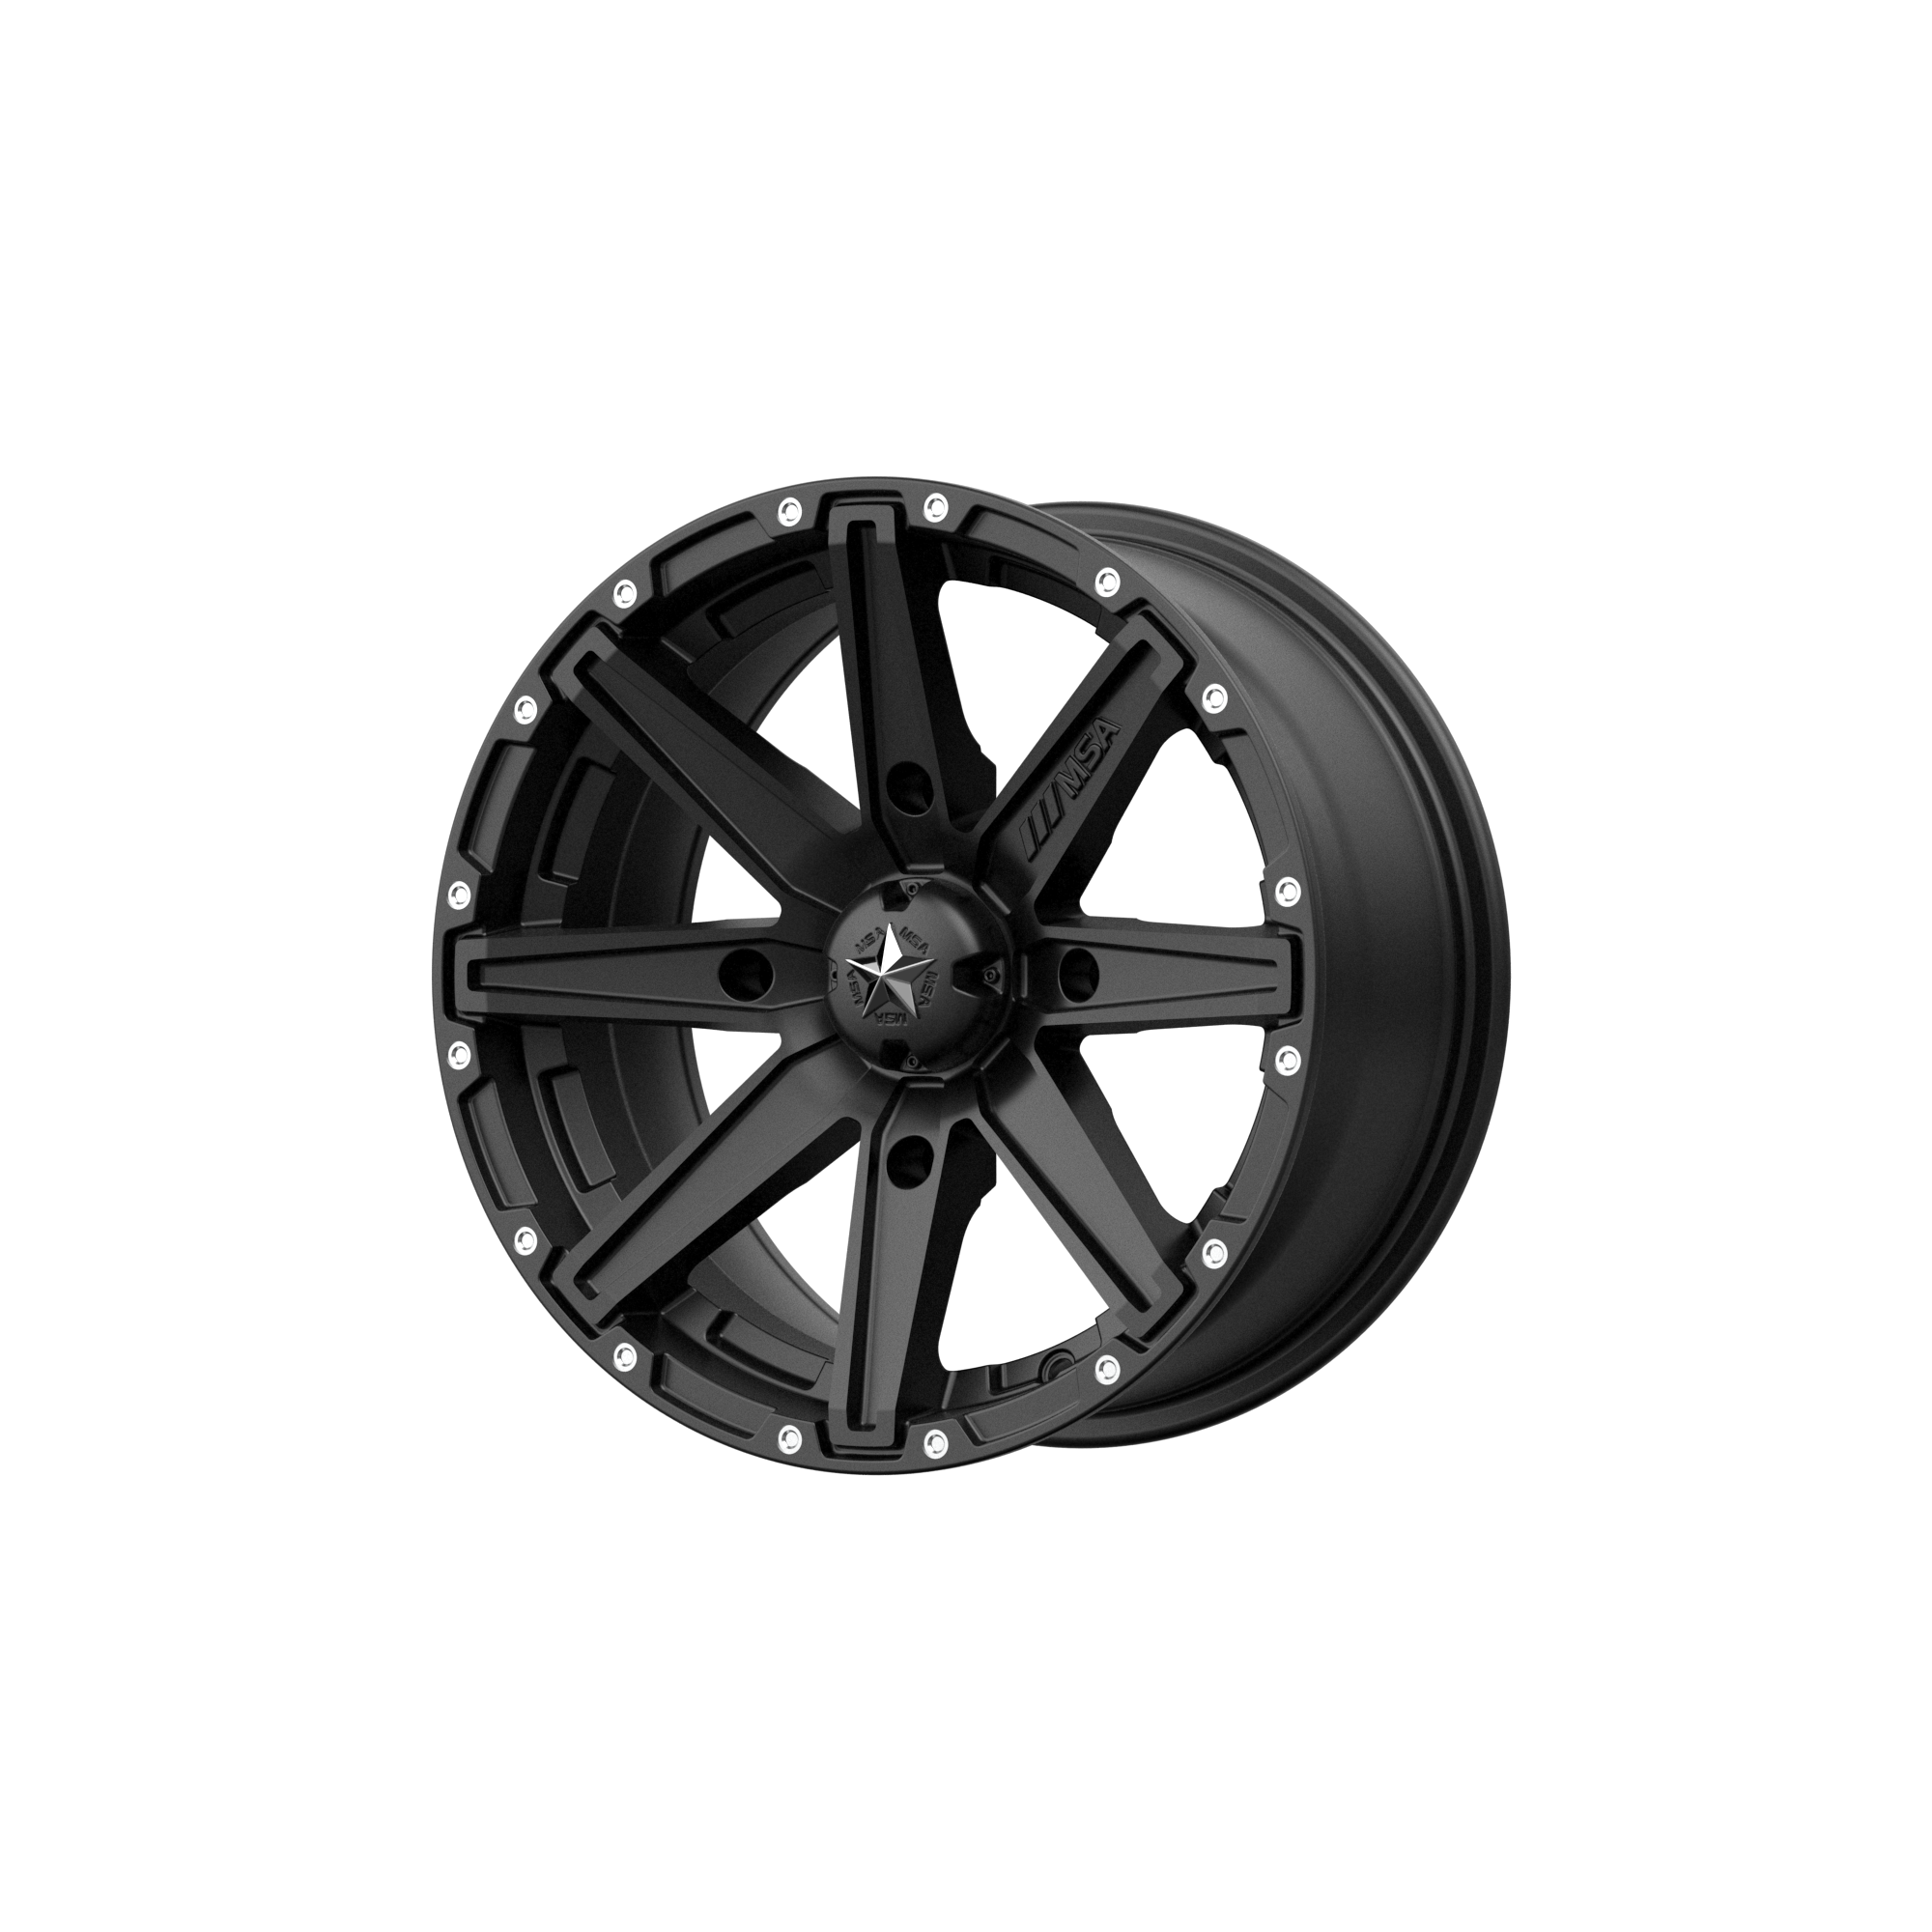 MSA Offroad Wheels M33 CLUTCH 15x10 0 4x156/4x156 Satin Black